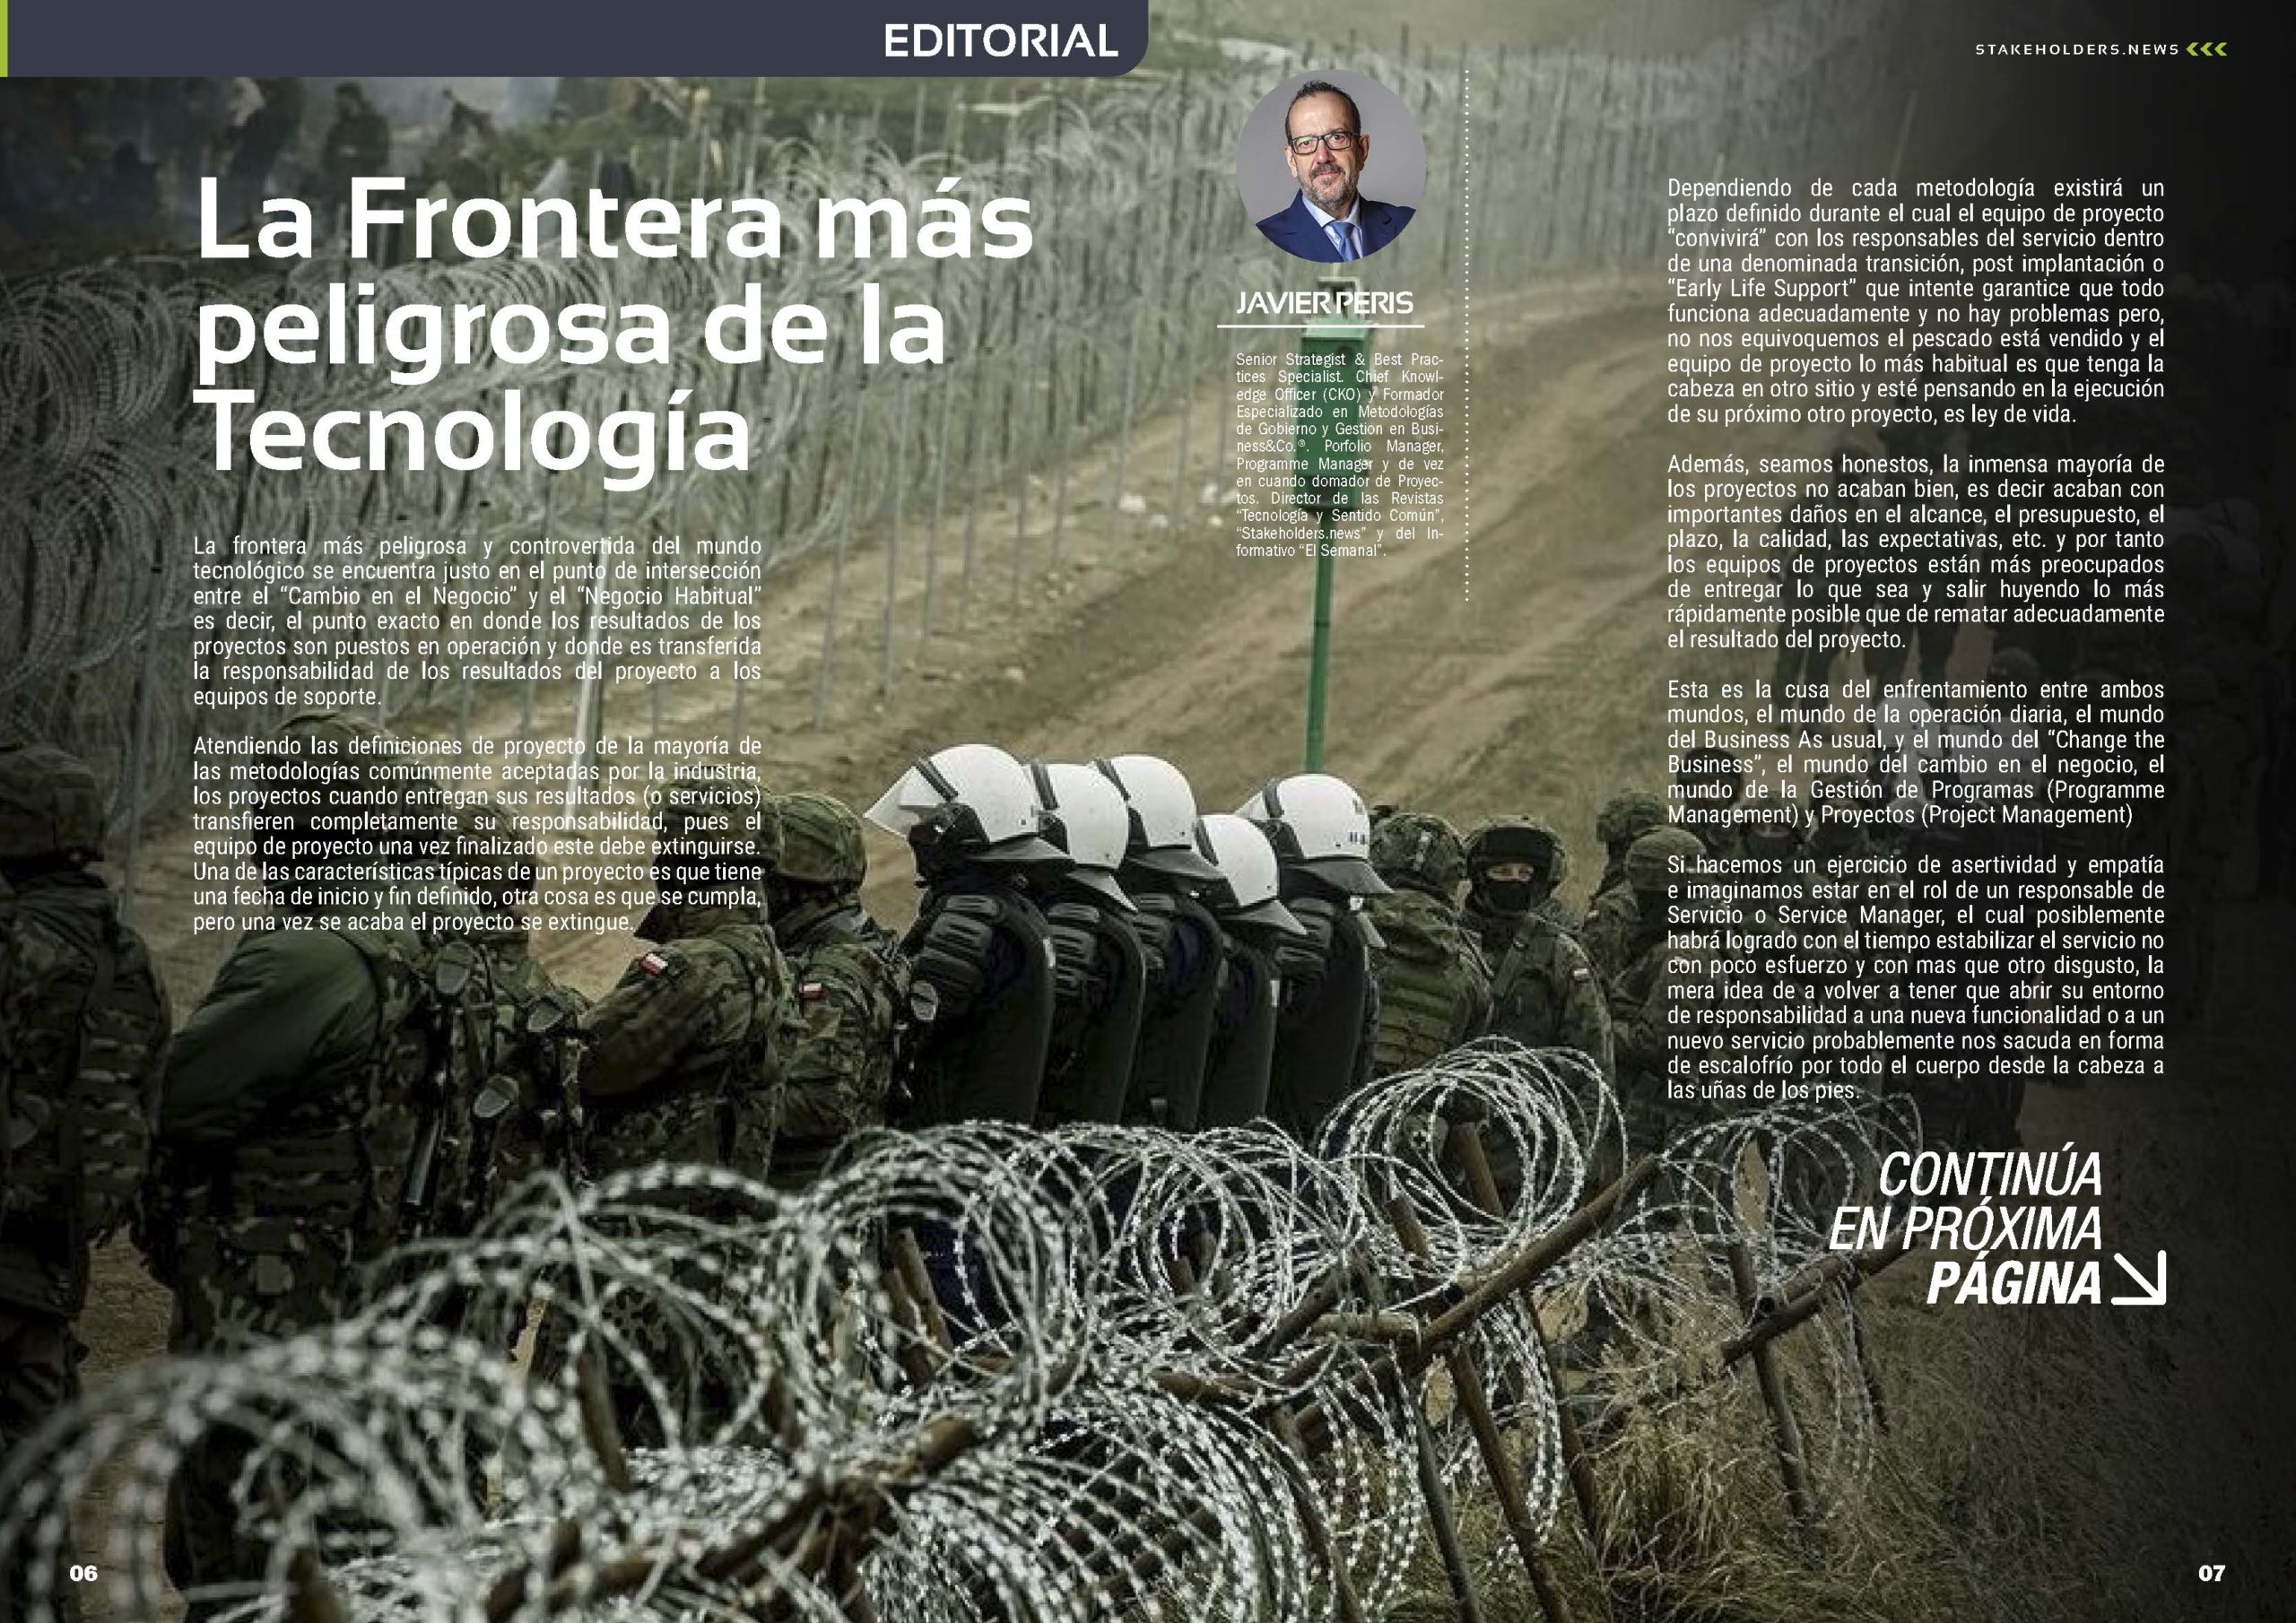 Articulo "La Frontera más peligrosa de la Tecnología" Editorial de Javier Peris en la Revista Stakeholders.news